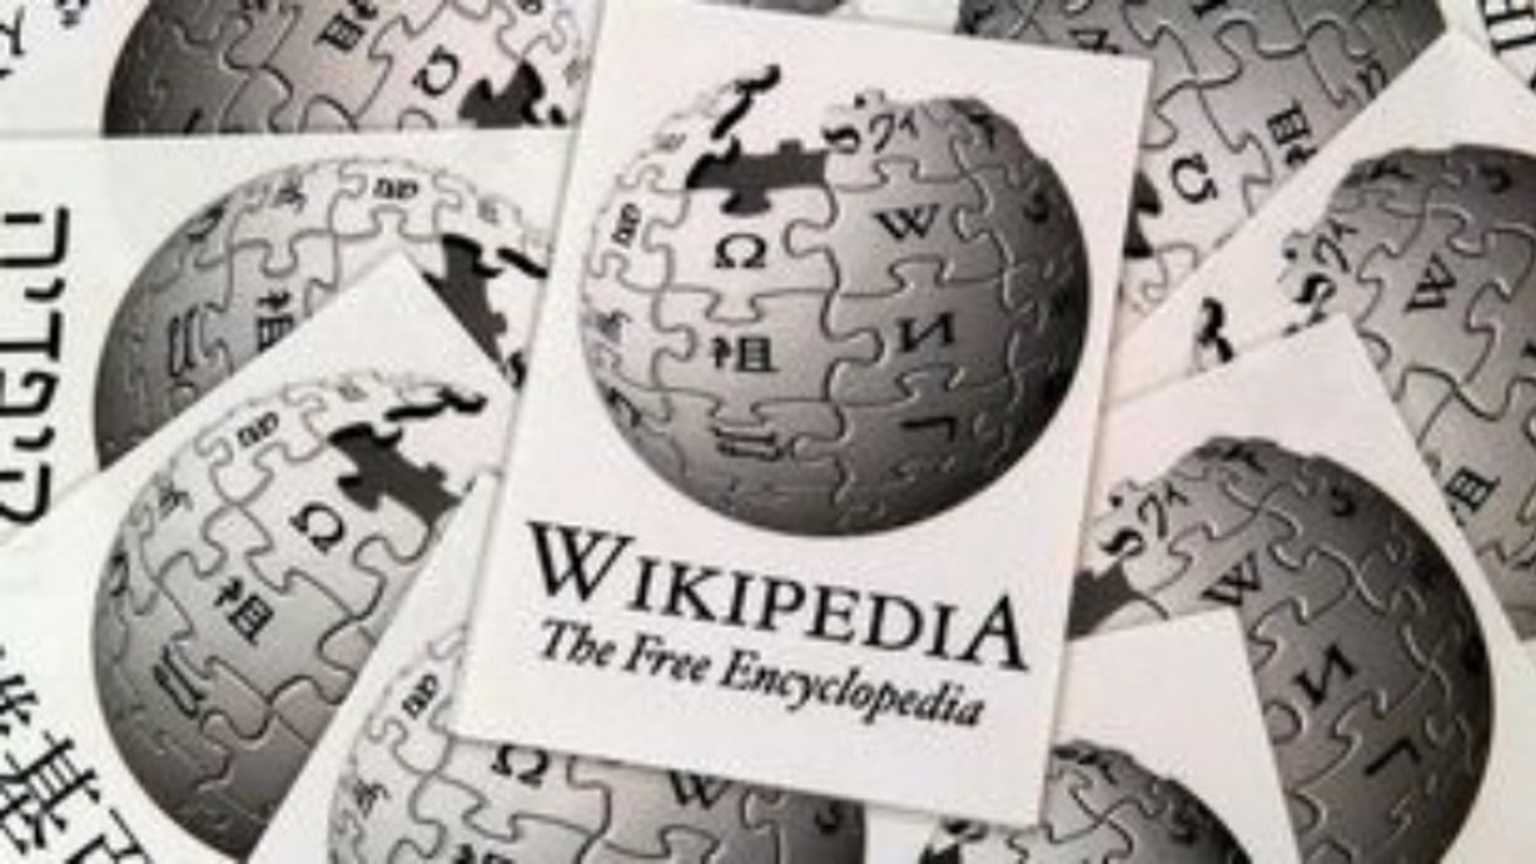 Αυτά ήταν τα 10 δημοφιλέστερα λήμματα της ελληνικής Wikipedia το 2021